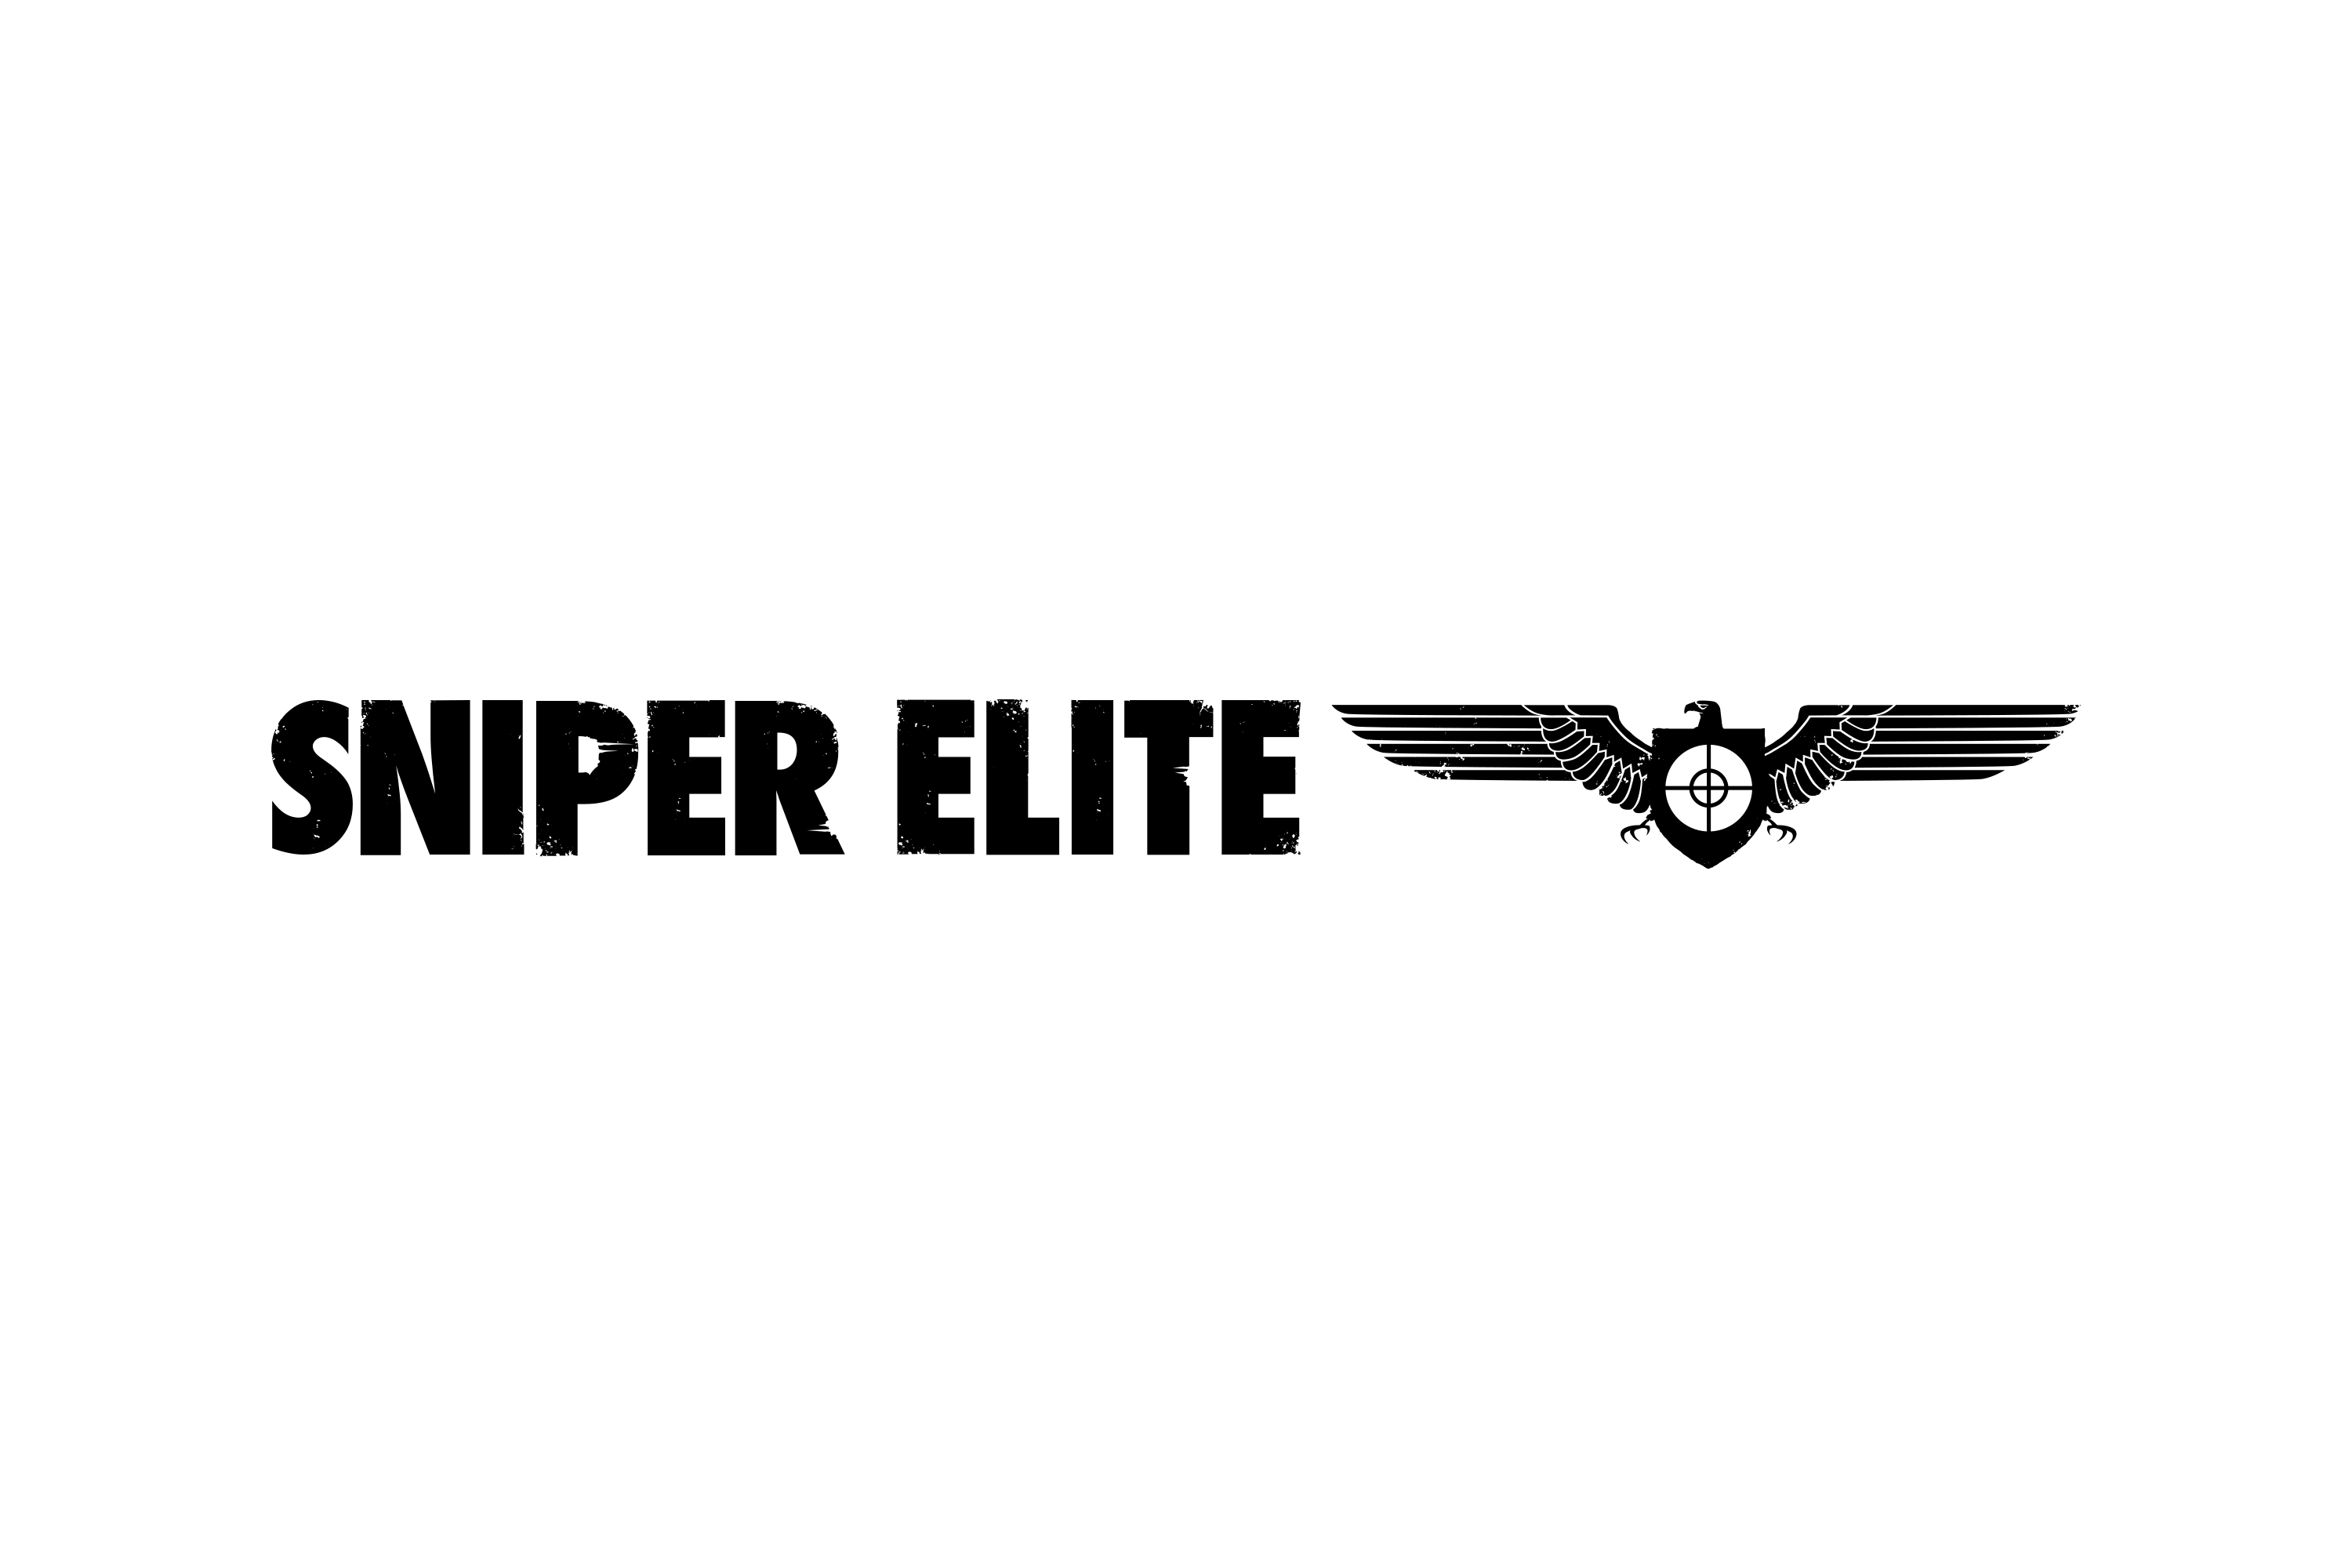 Download Sniper Elite Logo In Svg Vector Or Png File Format Logo Wine